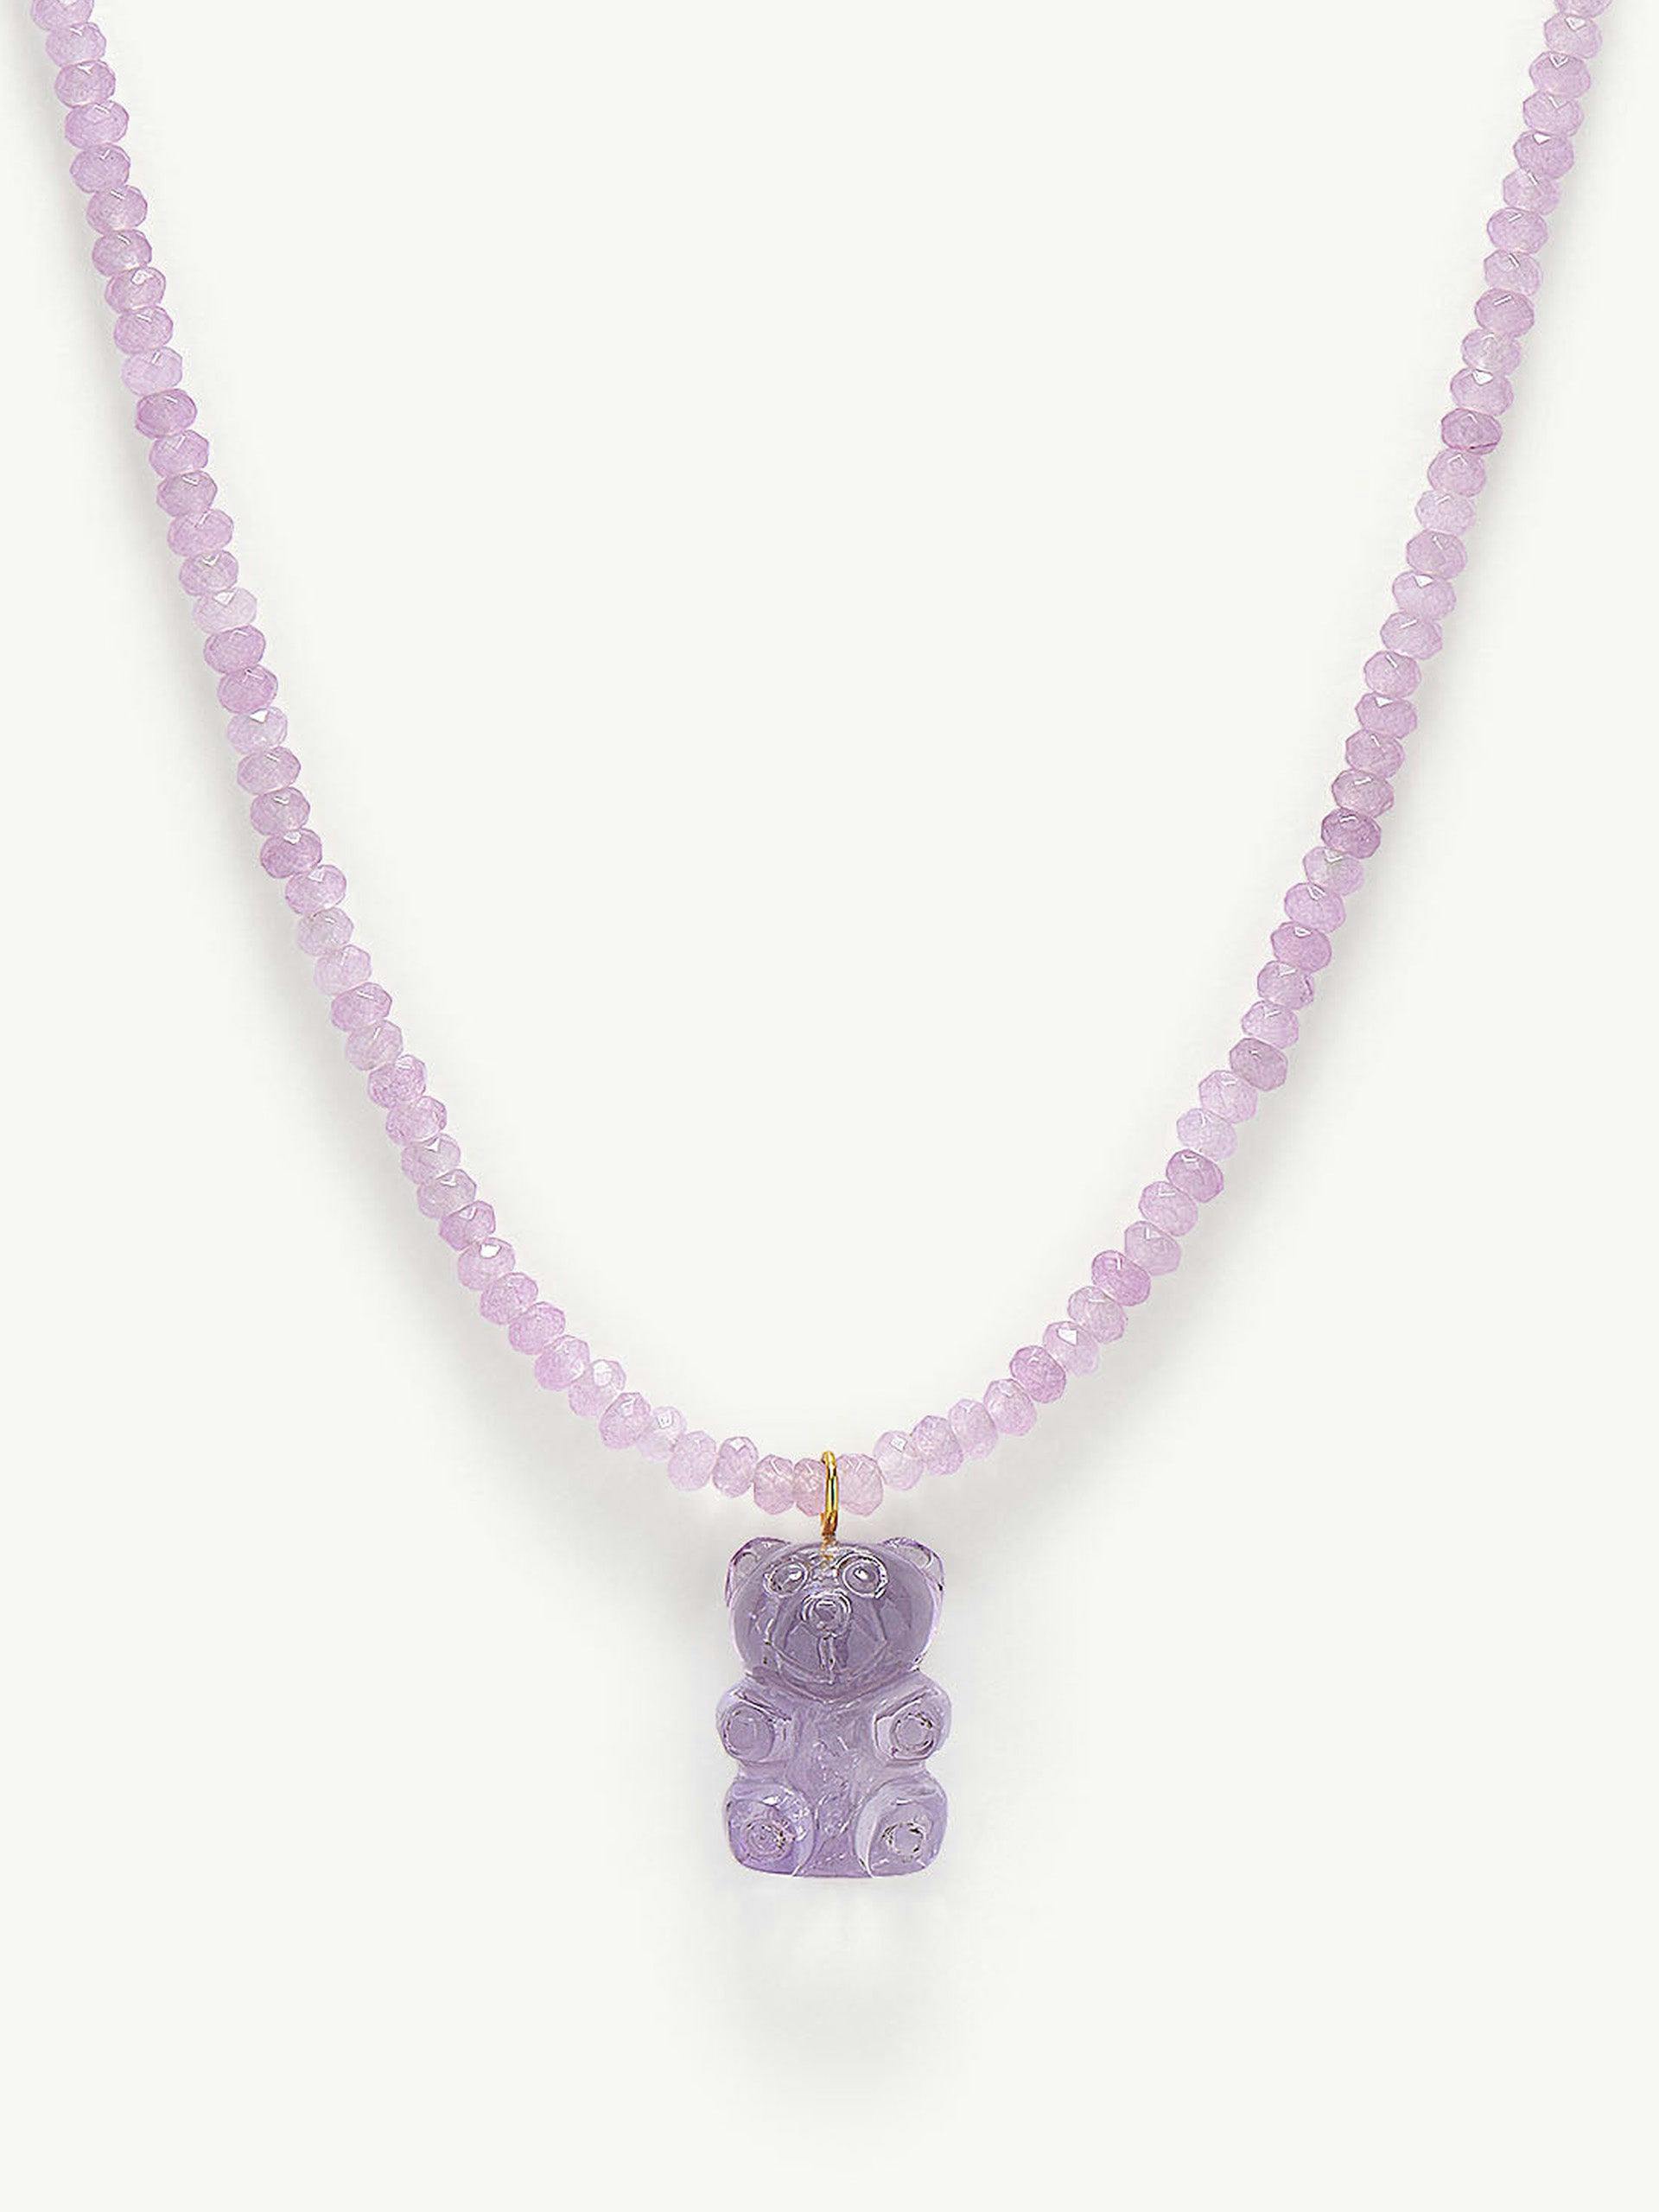 Amethyst Teddy Bear necklace